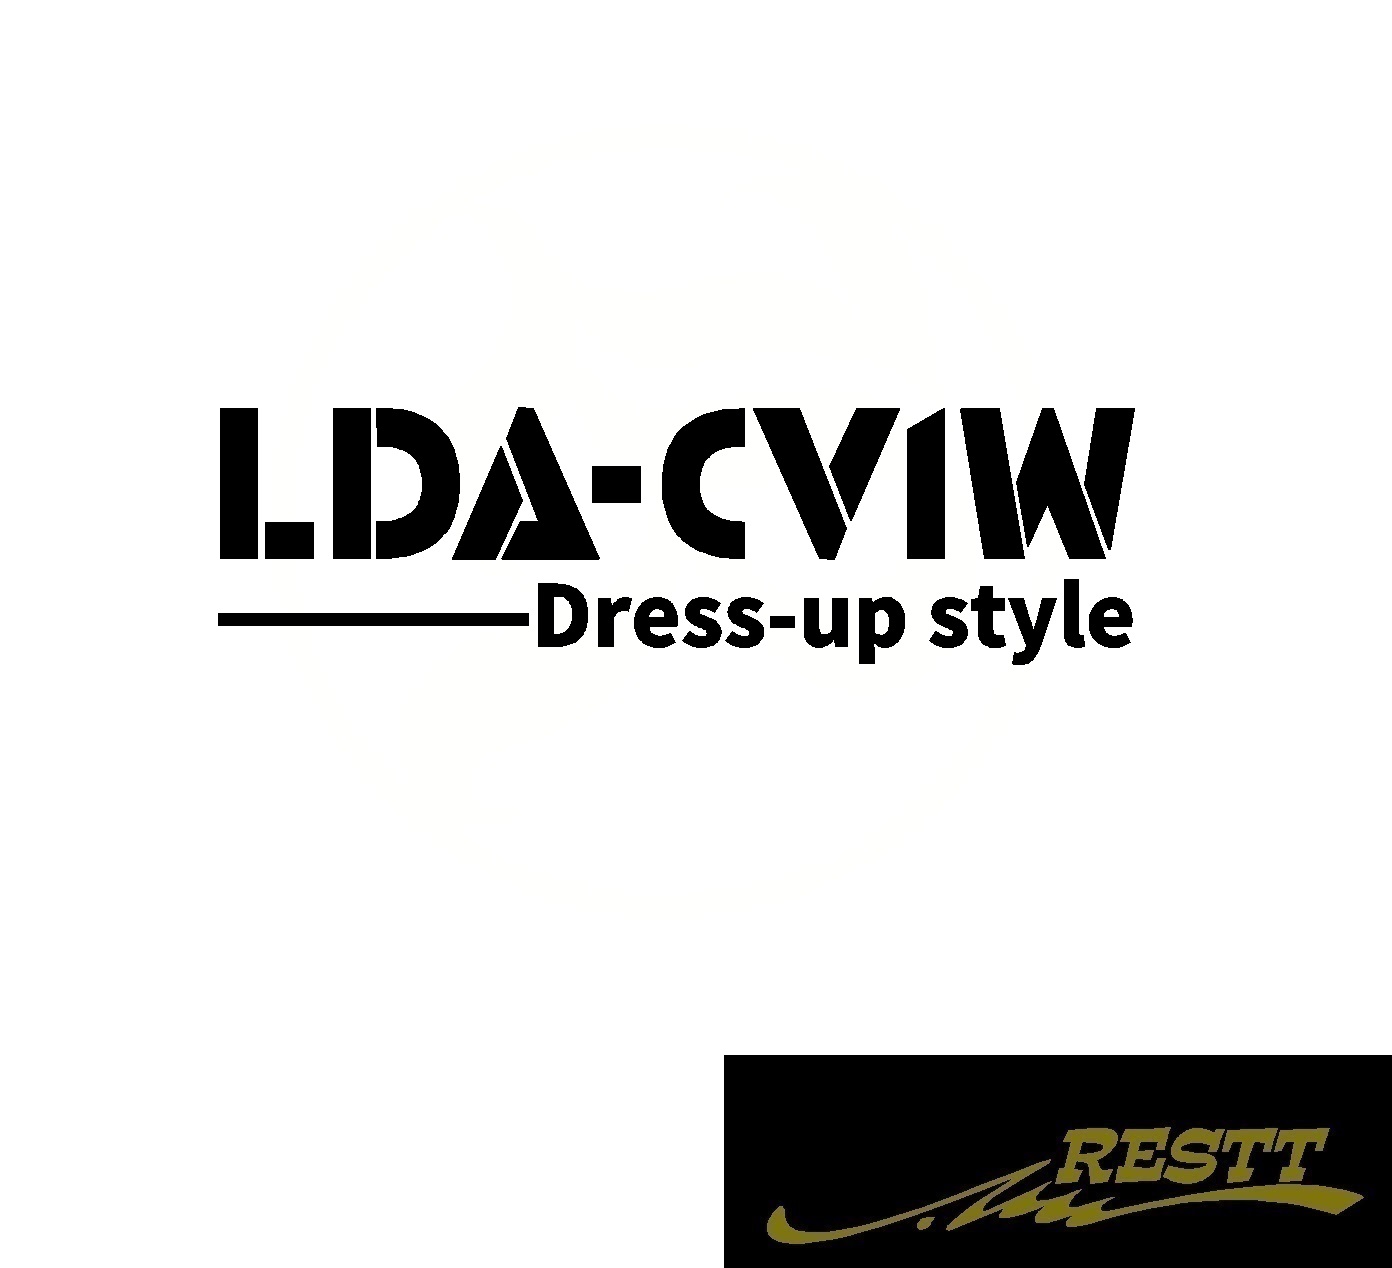 楽天市場 デリカ D 5 Lda Cv1w ドレスアップスタイル ロゴ カッティングステッカー 小サイズ おしゃれ デザイン かっこいい ステッカー ミツビシ 三菱 型式 Restt 楽天市場店